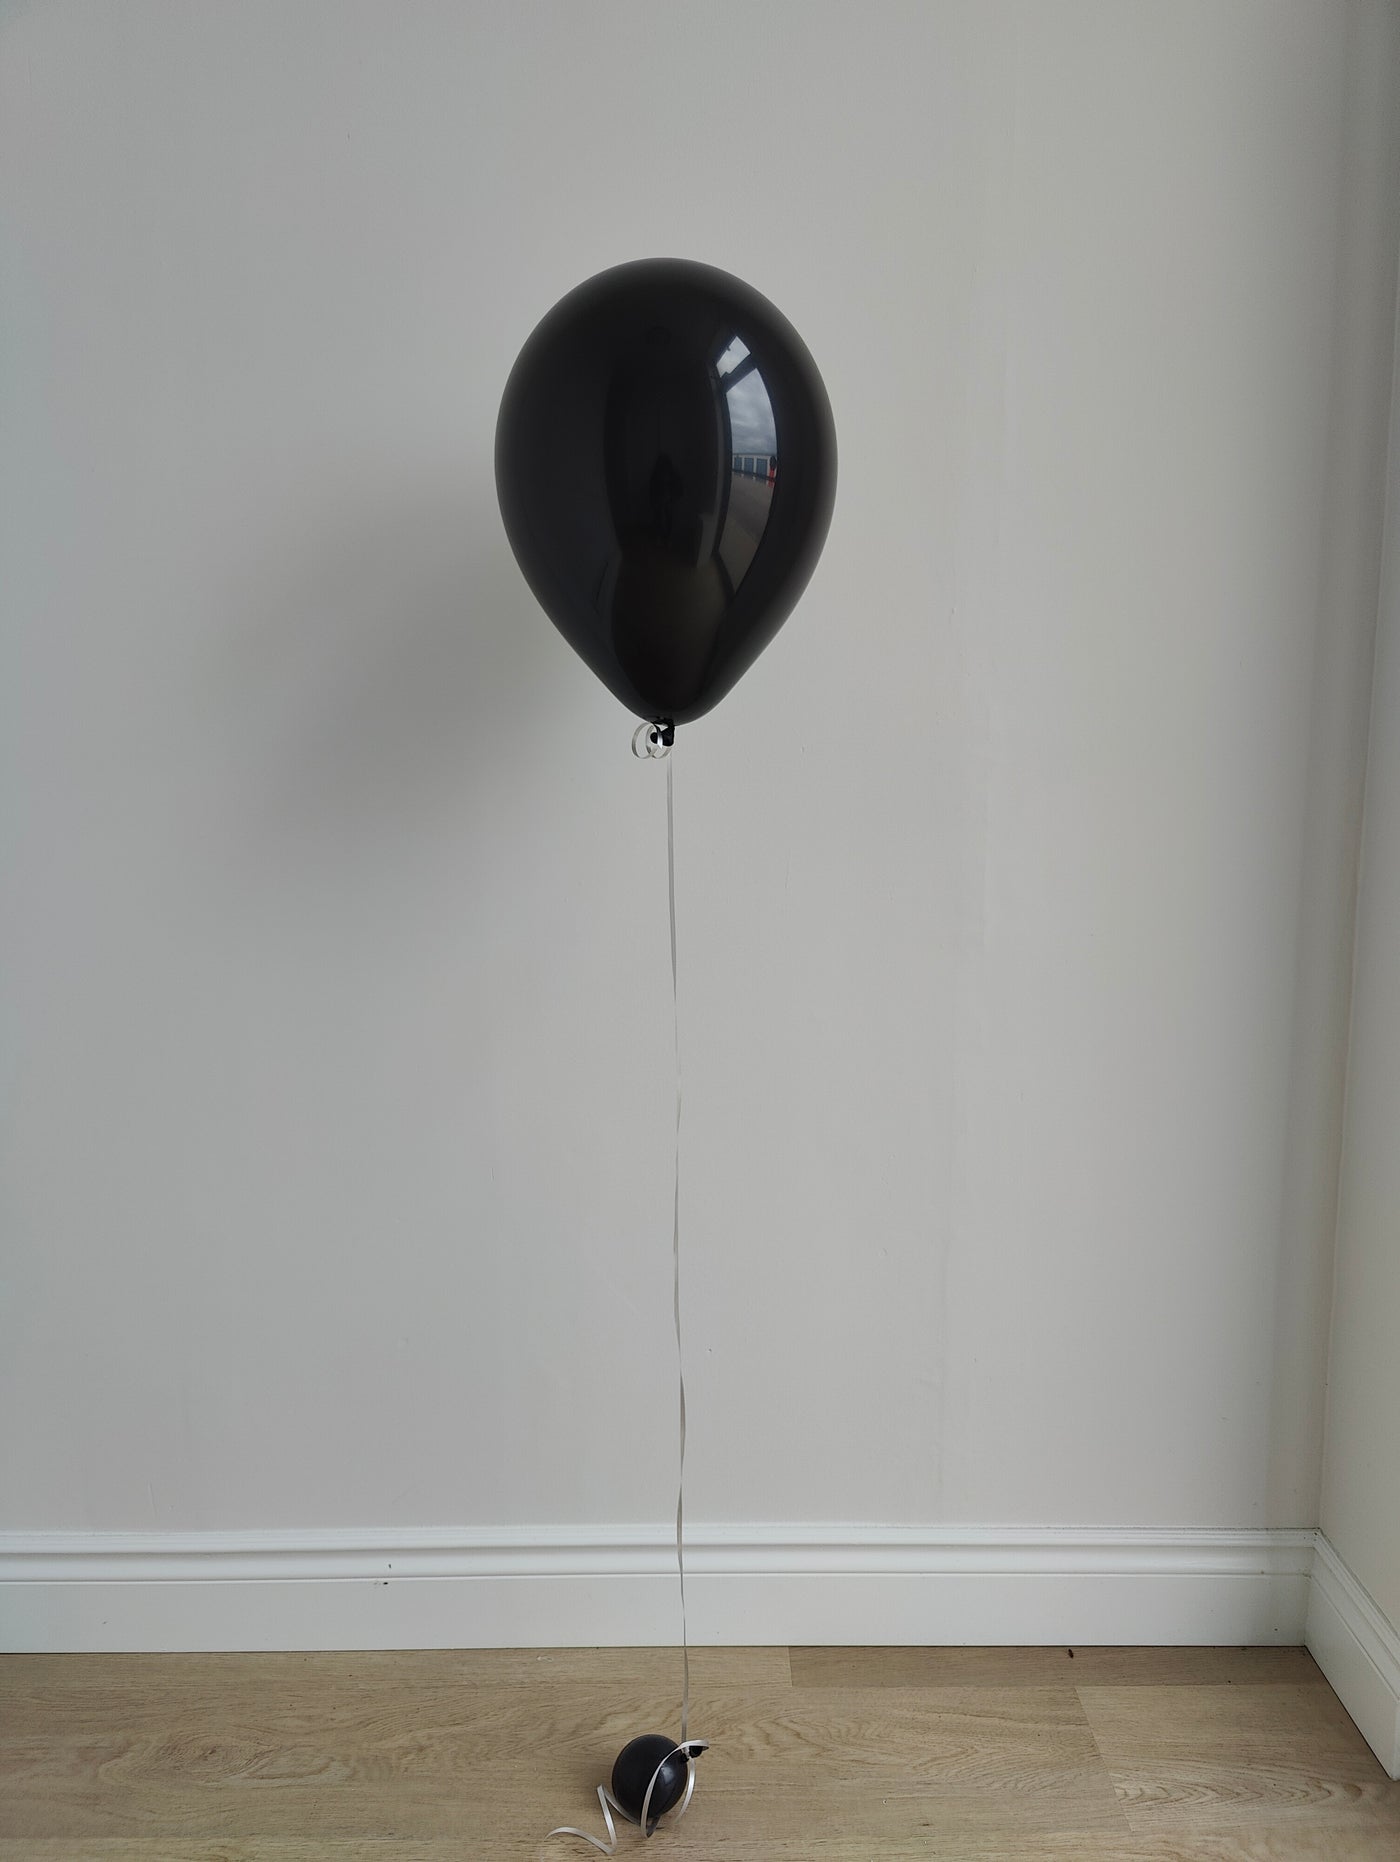 Metallic black Balloon